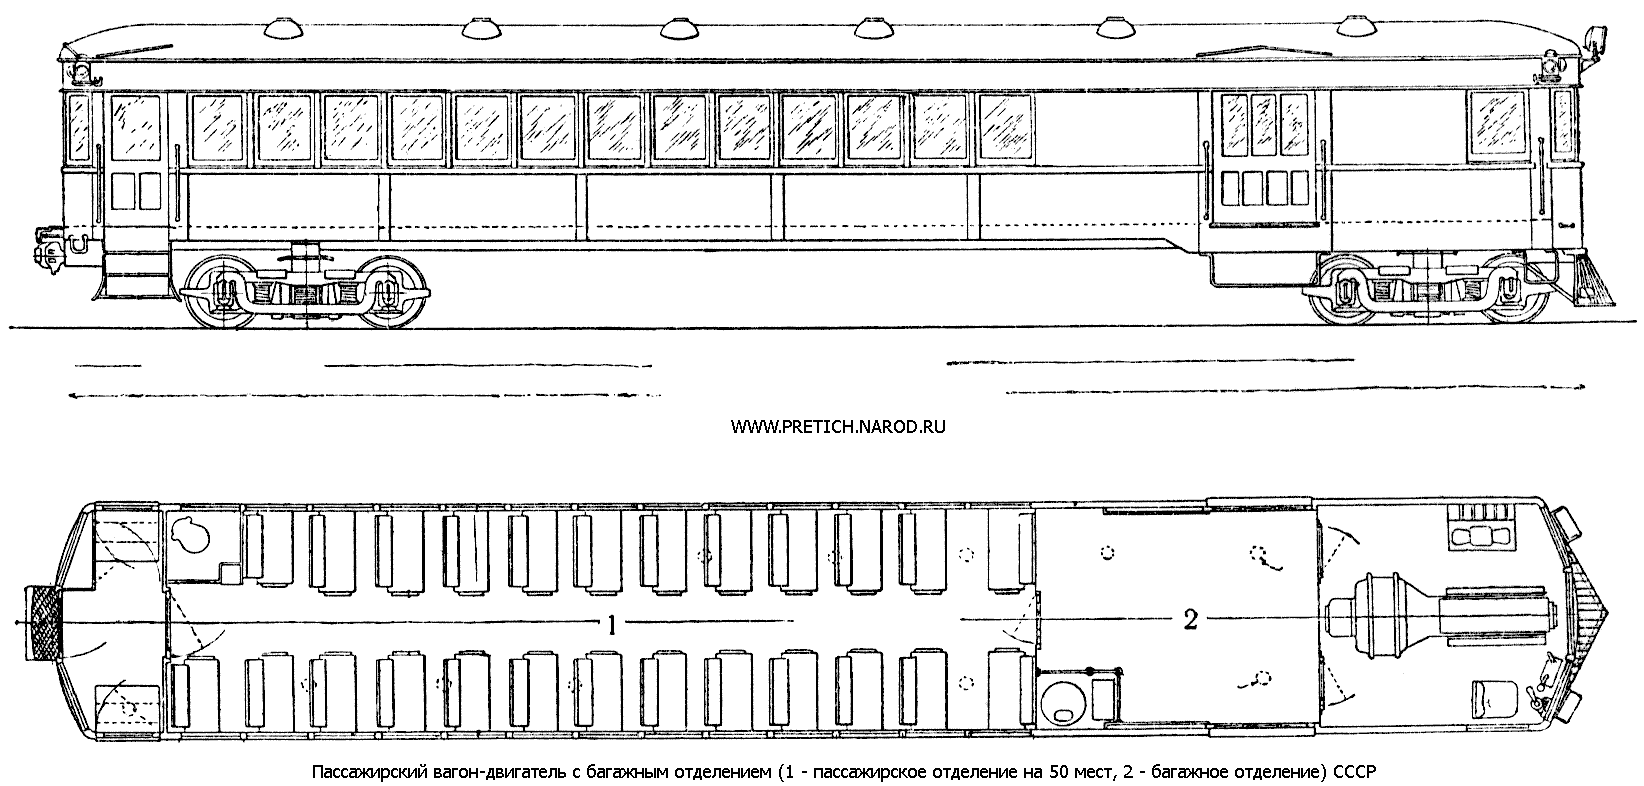 Пассажирский вагон-двигатель (автомотриса, вагон-локомотив) с багажным отделением, СССР, 40-е годы, схема